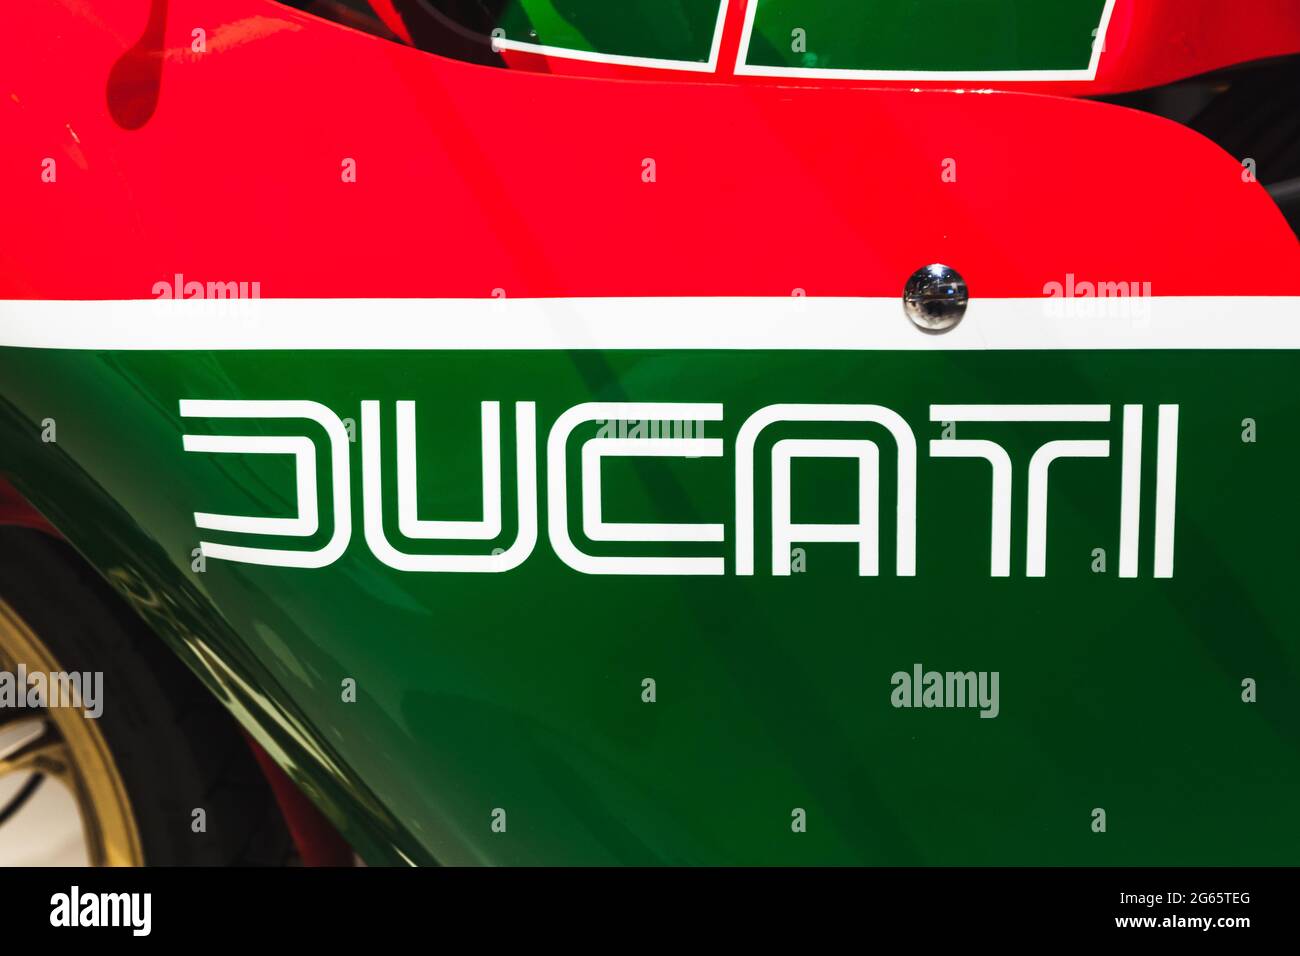 St.Petersburg, Russland - 3. April 2019: Das Logo der Marke Ducati befindet sich auf einer rot grünen Sportfahrrad-Kapuze Stockfoto